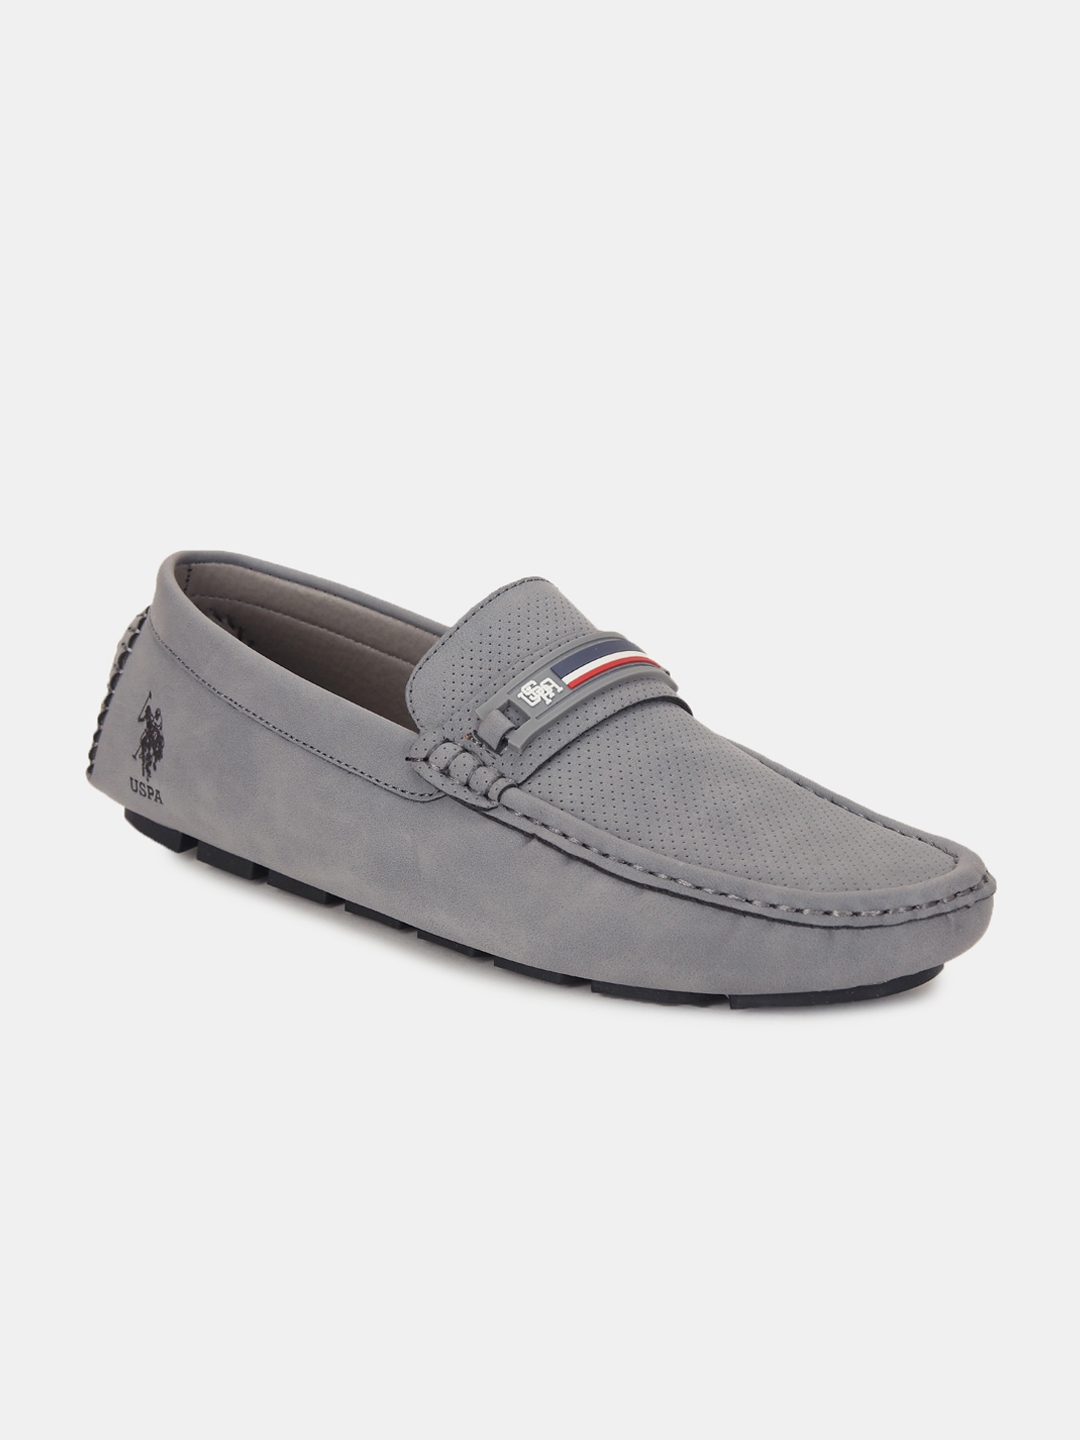 Buy U S Polo Assn Men Grey PU Driving Shoes - Casual Shoes for Men ...